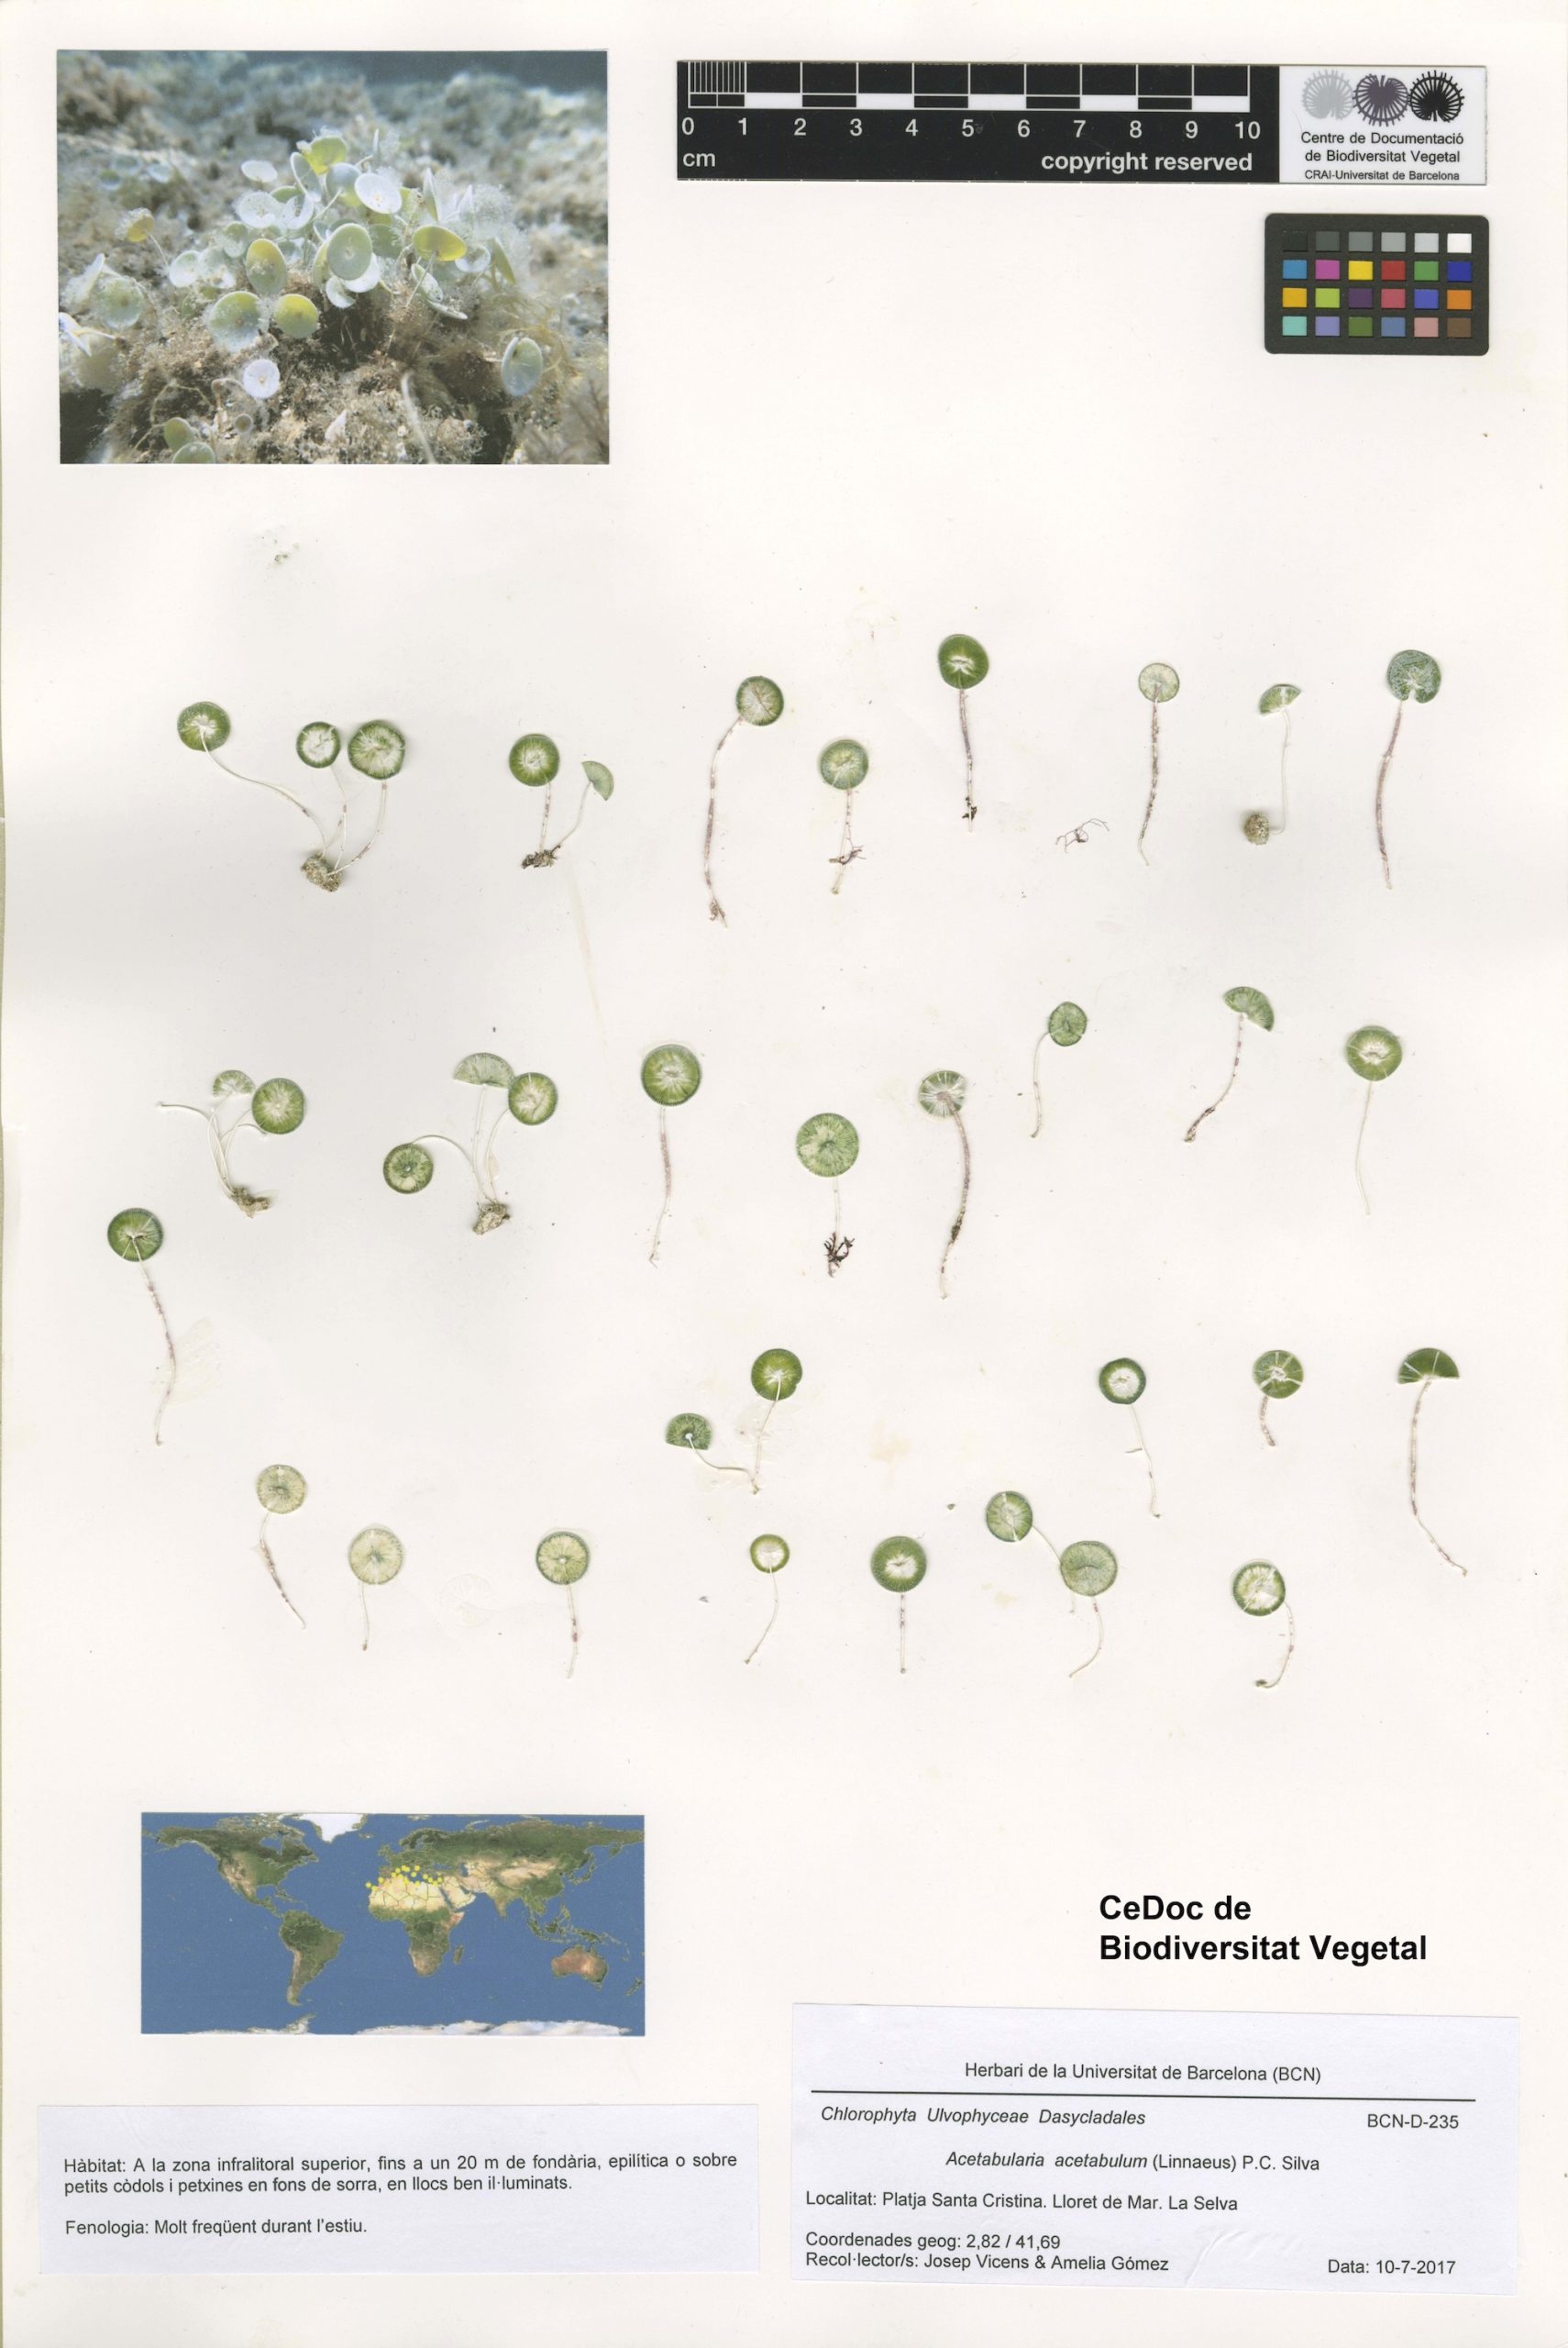 Acetabularia acetabulum (Linnaeus) P.C. Silva